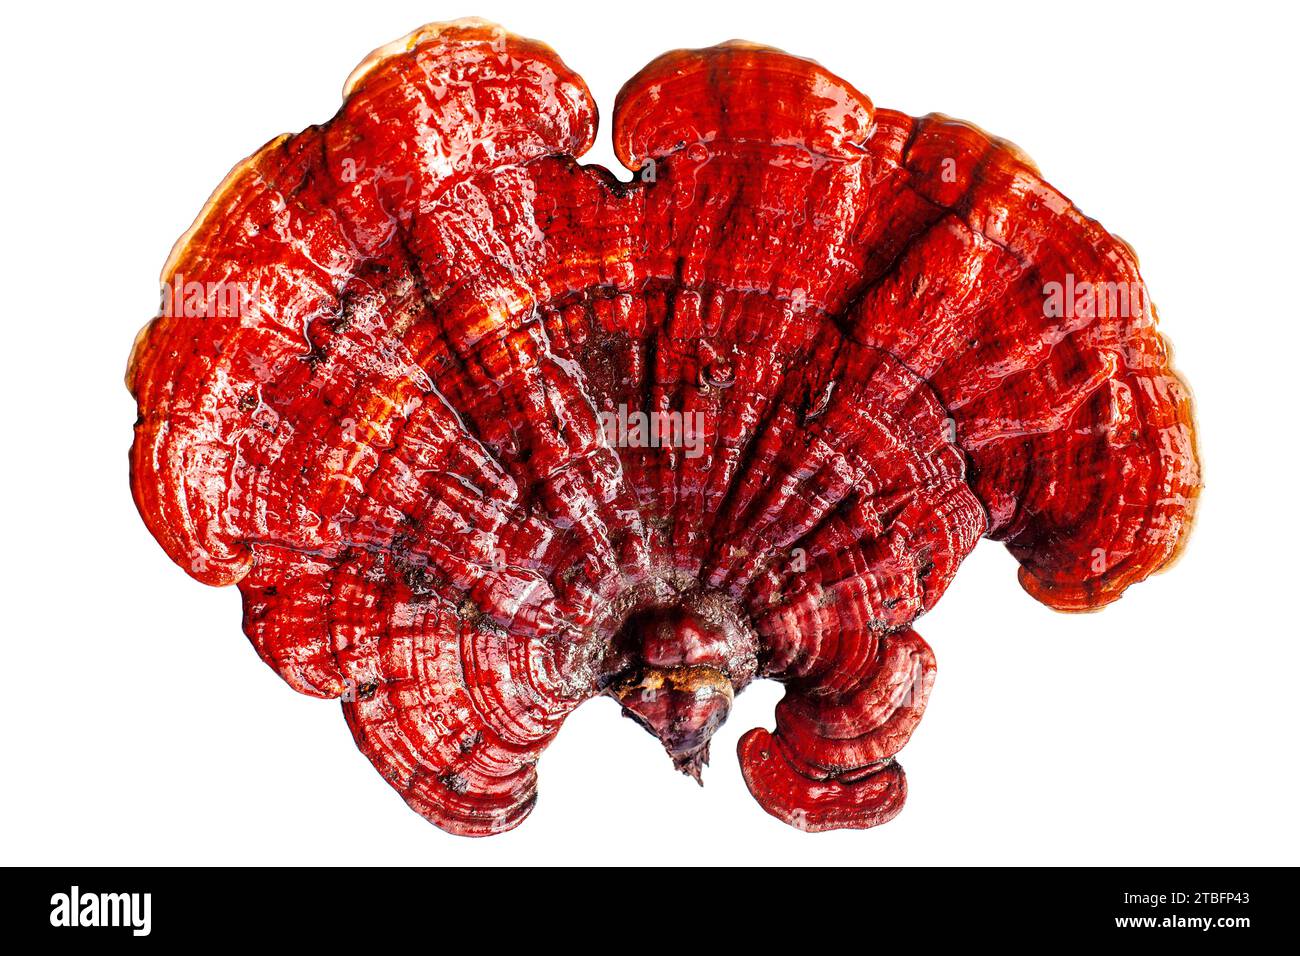 Fungo reishi rosso su sfondo bianco primo piano isolato, fungo Lingzhi, Ganoderma lucidum, fungo laccato, fungo medicinale Foto Stock